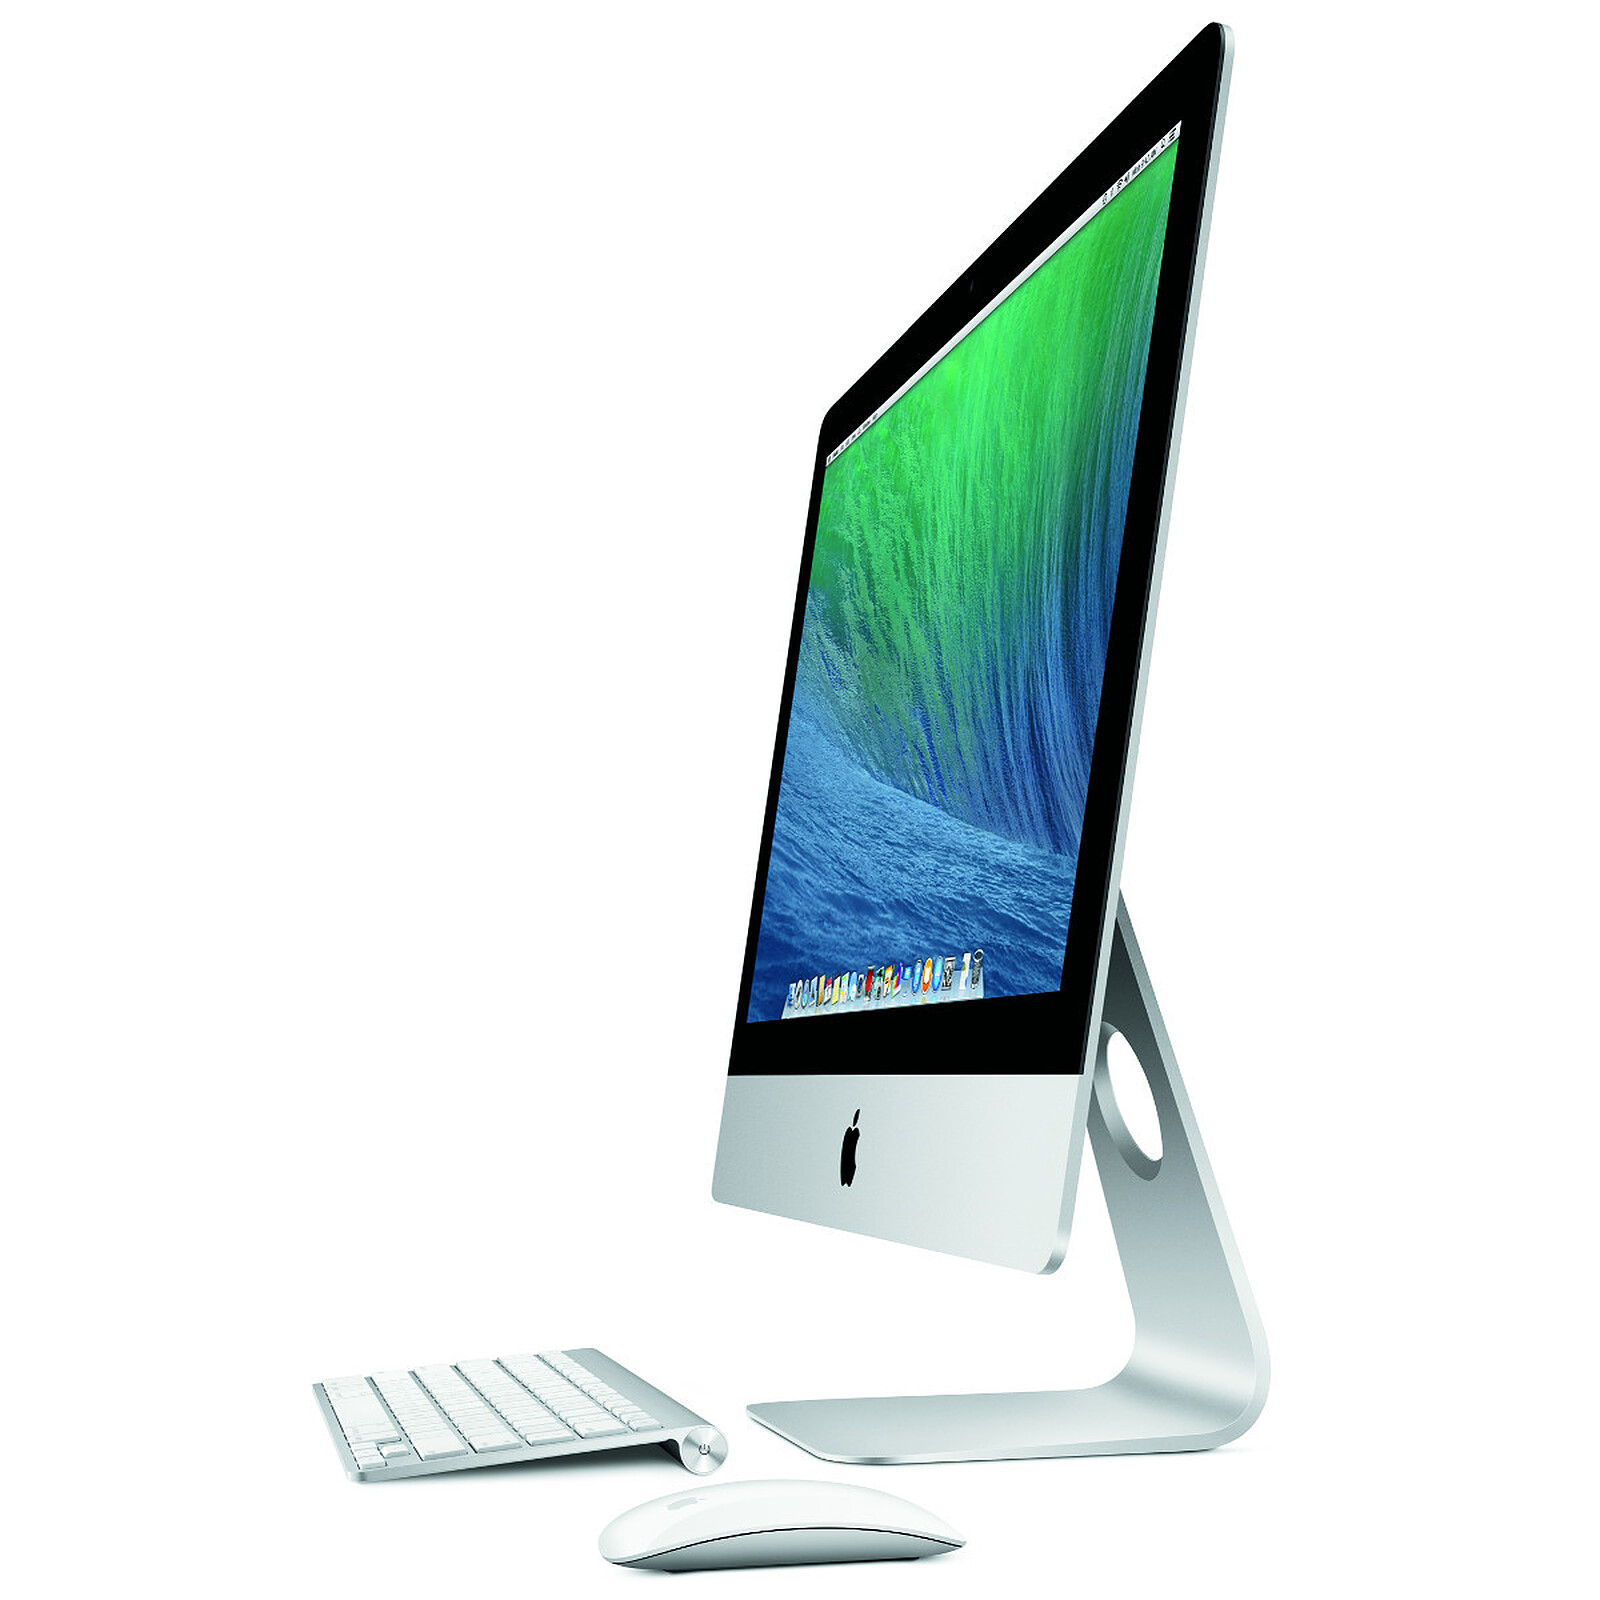 Ordinateur de bureau Apple iMac 21,5 hache restauré Liban